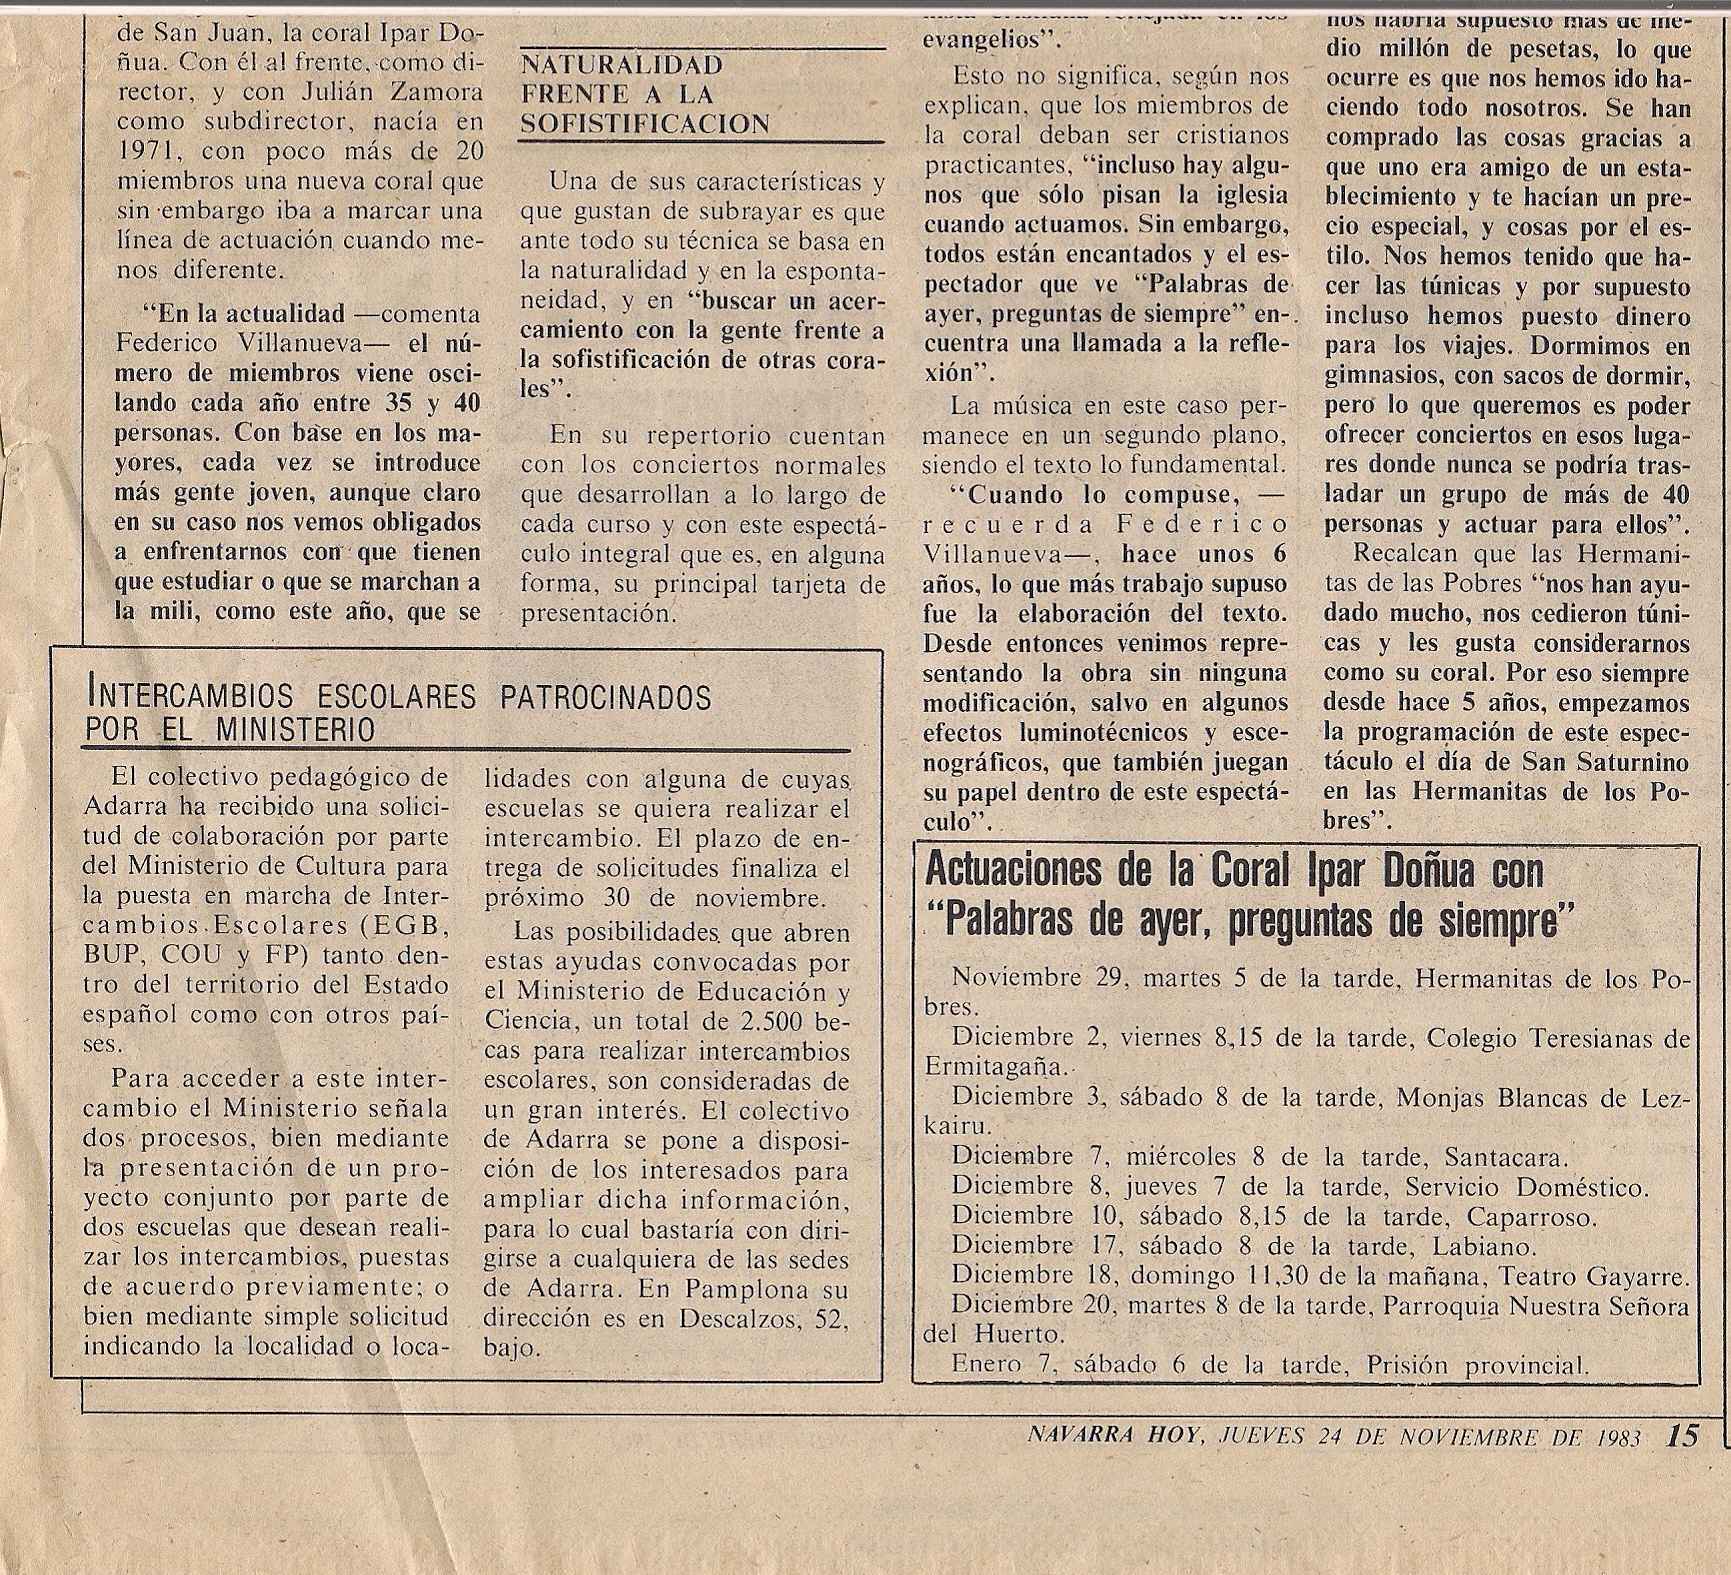 Año 1983. Recorte de prensa (Navarra hoy)